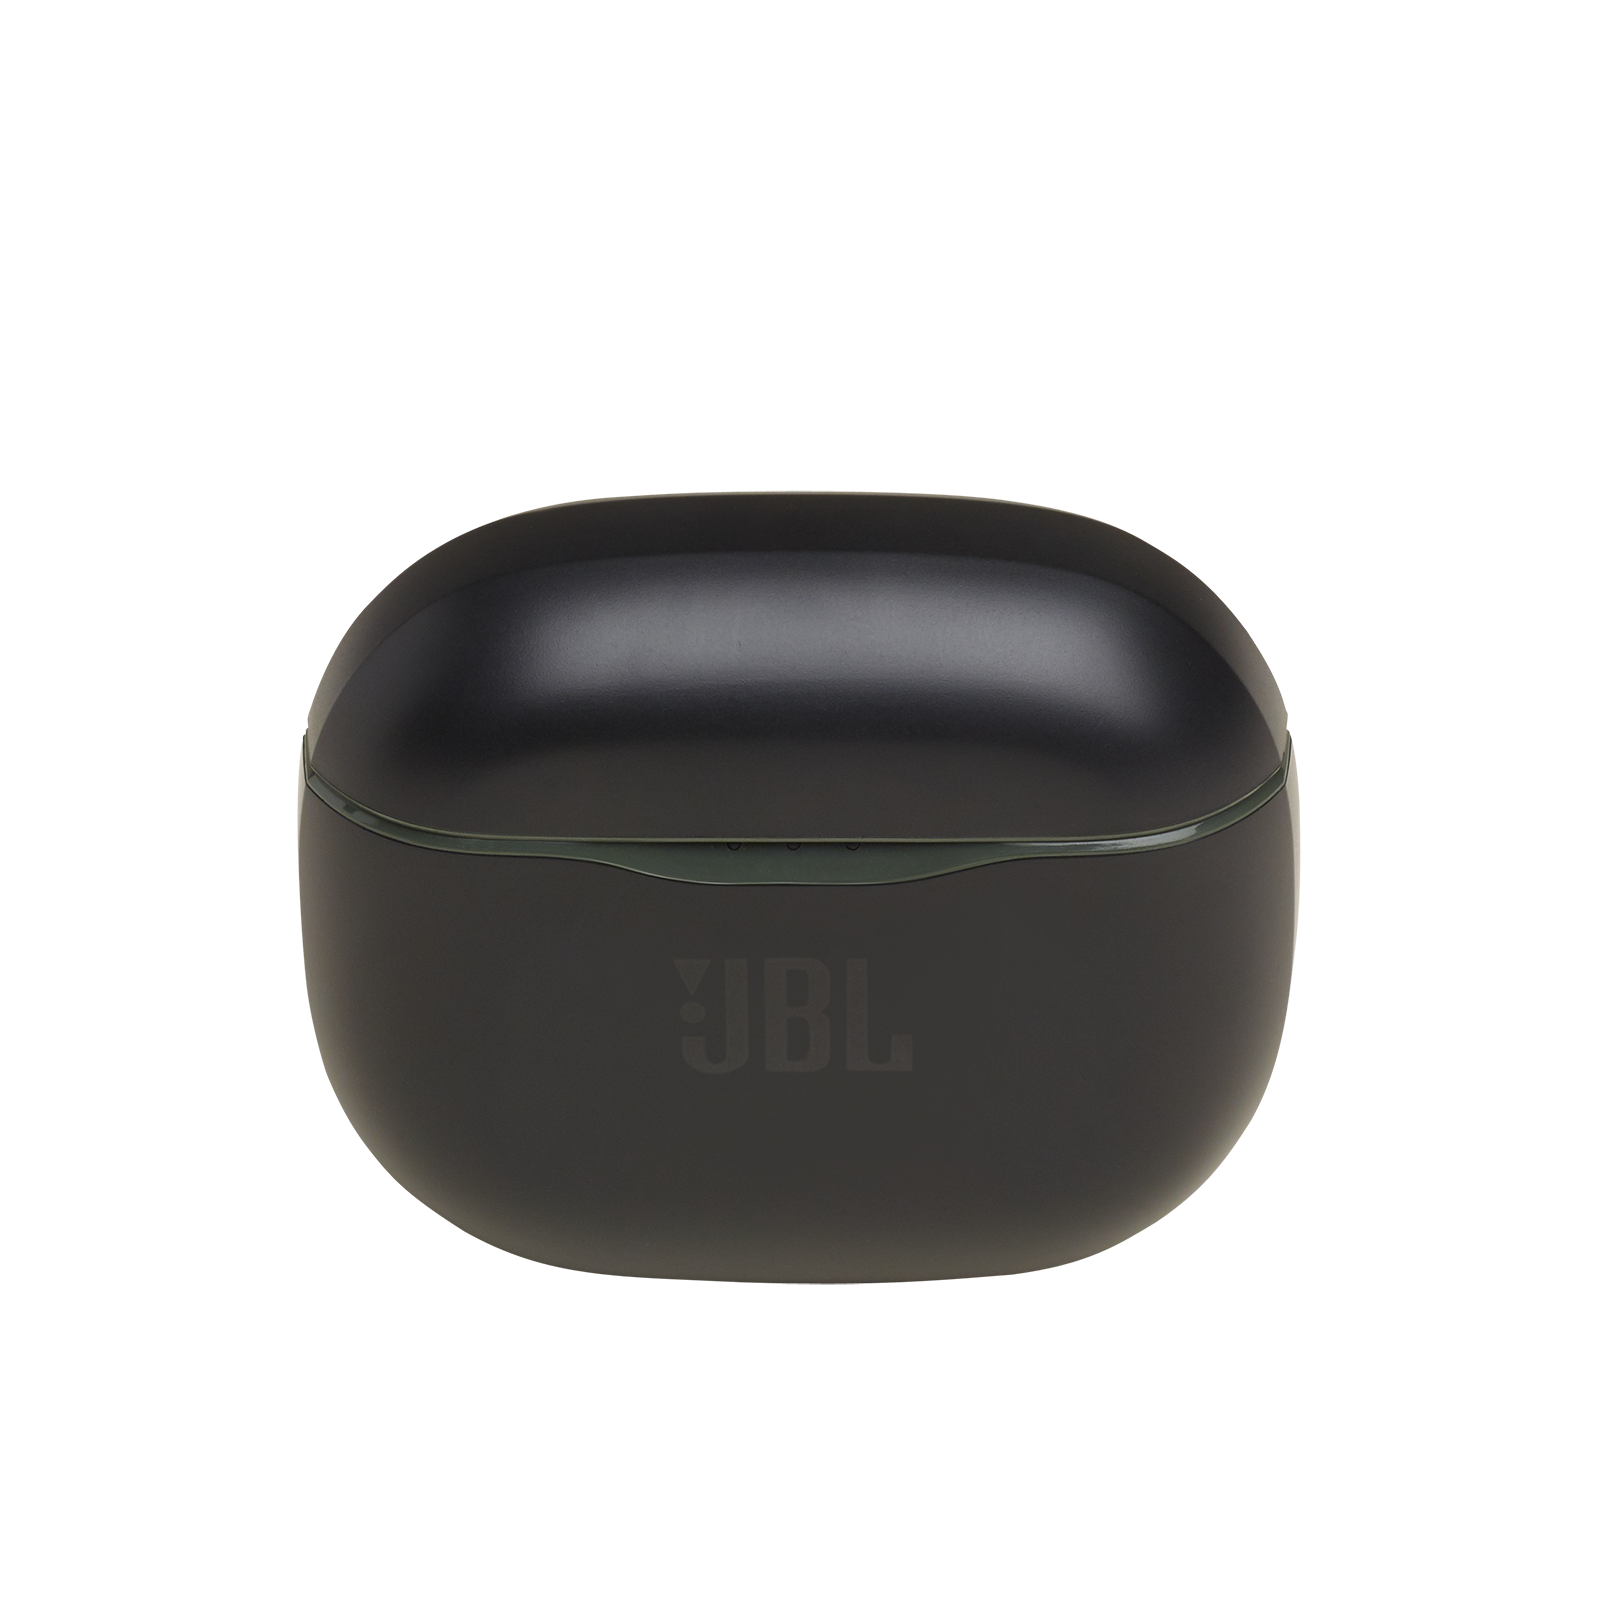 JBL Tune 120TWS - Green - True wireless in-ear headphones. - Detailshot 2